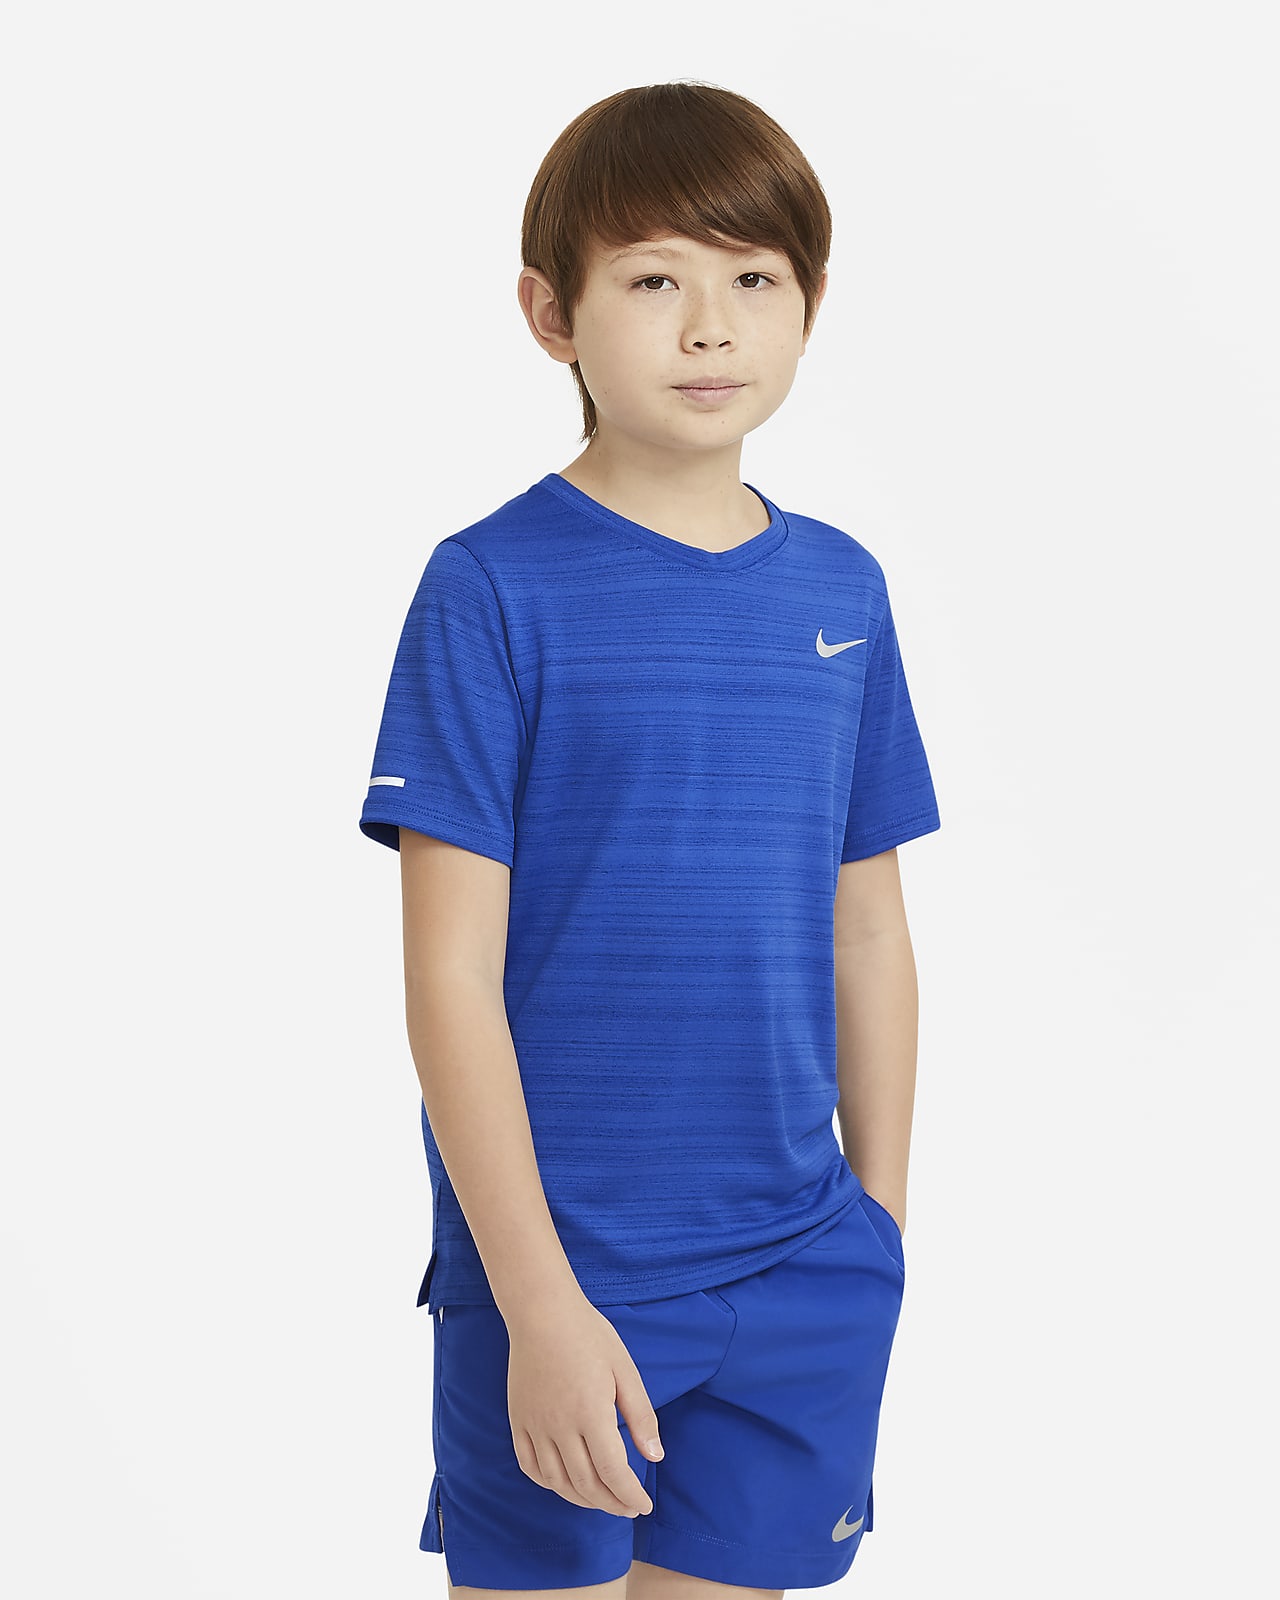 เสื้อเทรนนิ่งเด็กโต Nike Dri-FIT Miler (ชาย)